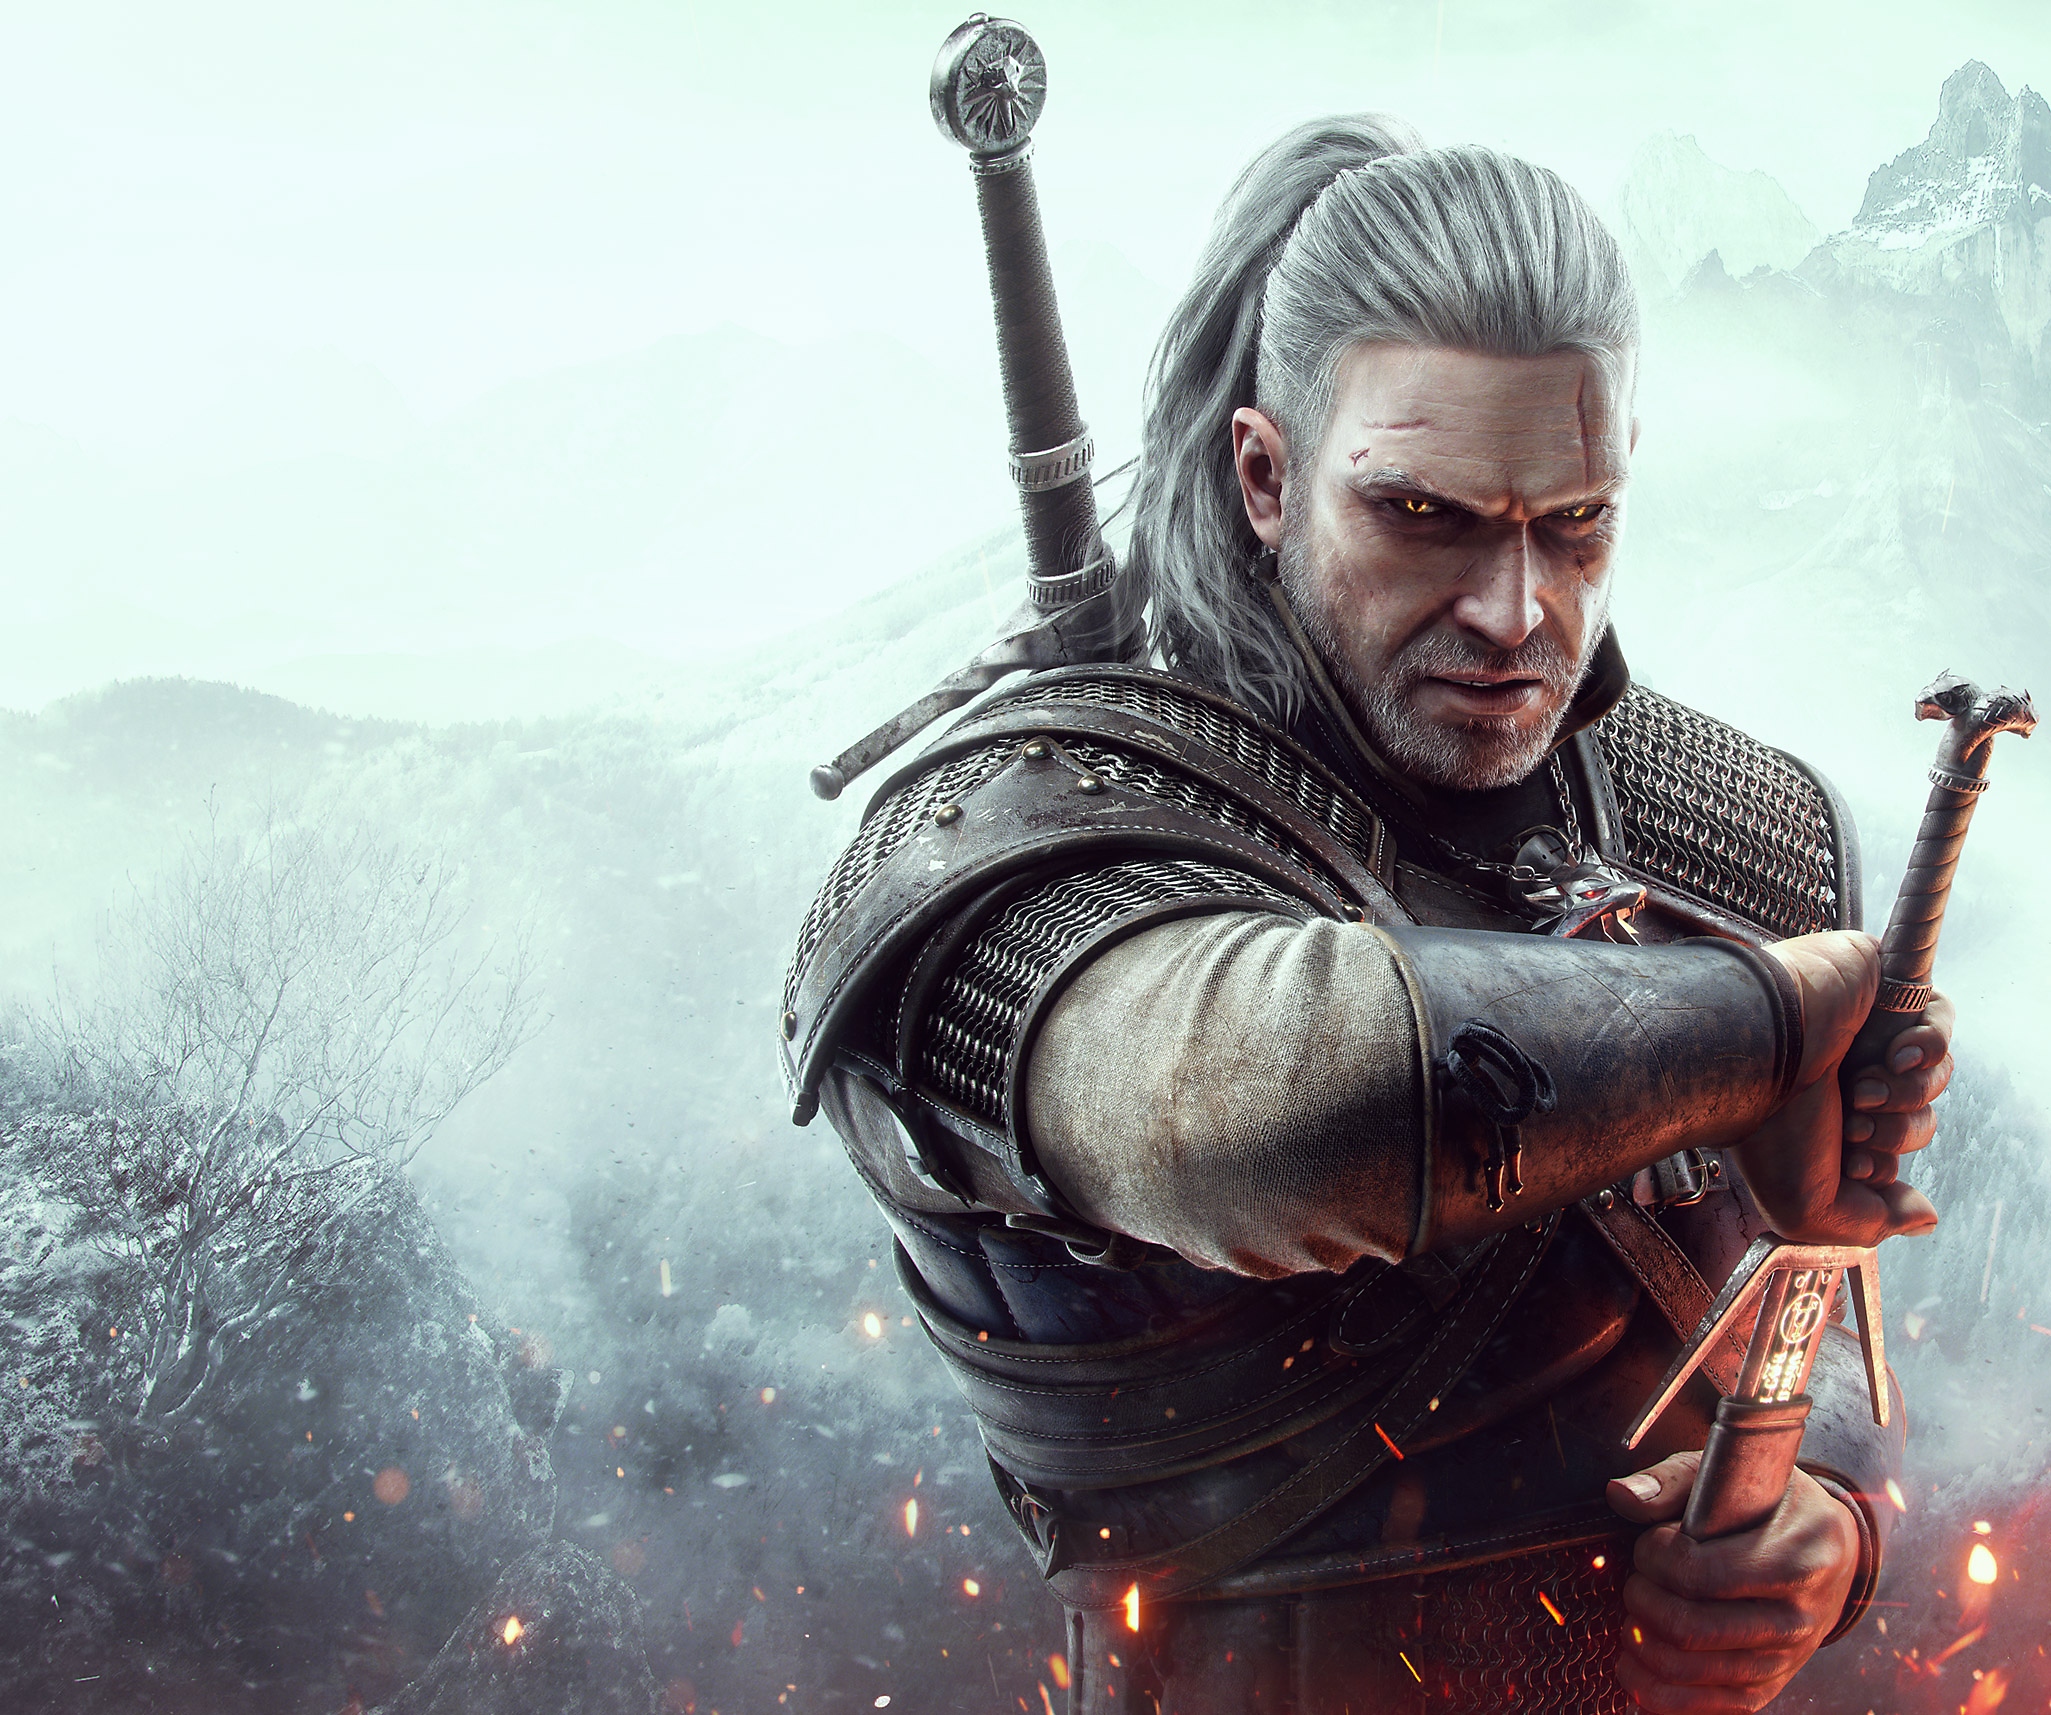 Arte guía de The Witcher 3 que presenta a Geralt de Rivia, el protagonista, desenvainando su espada.